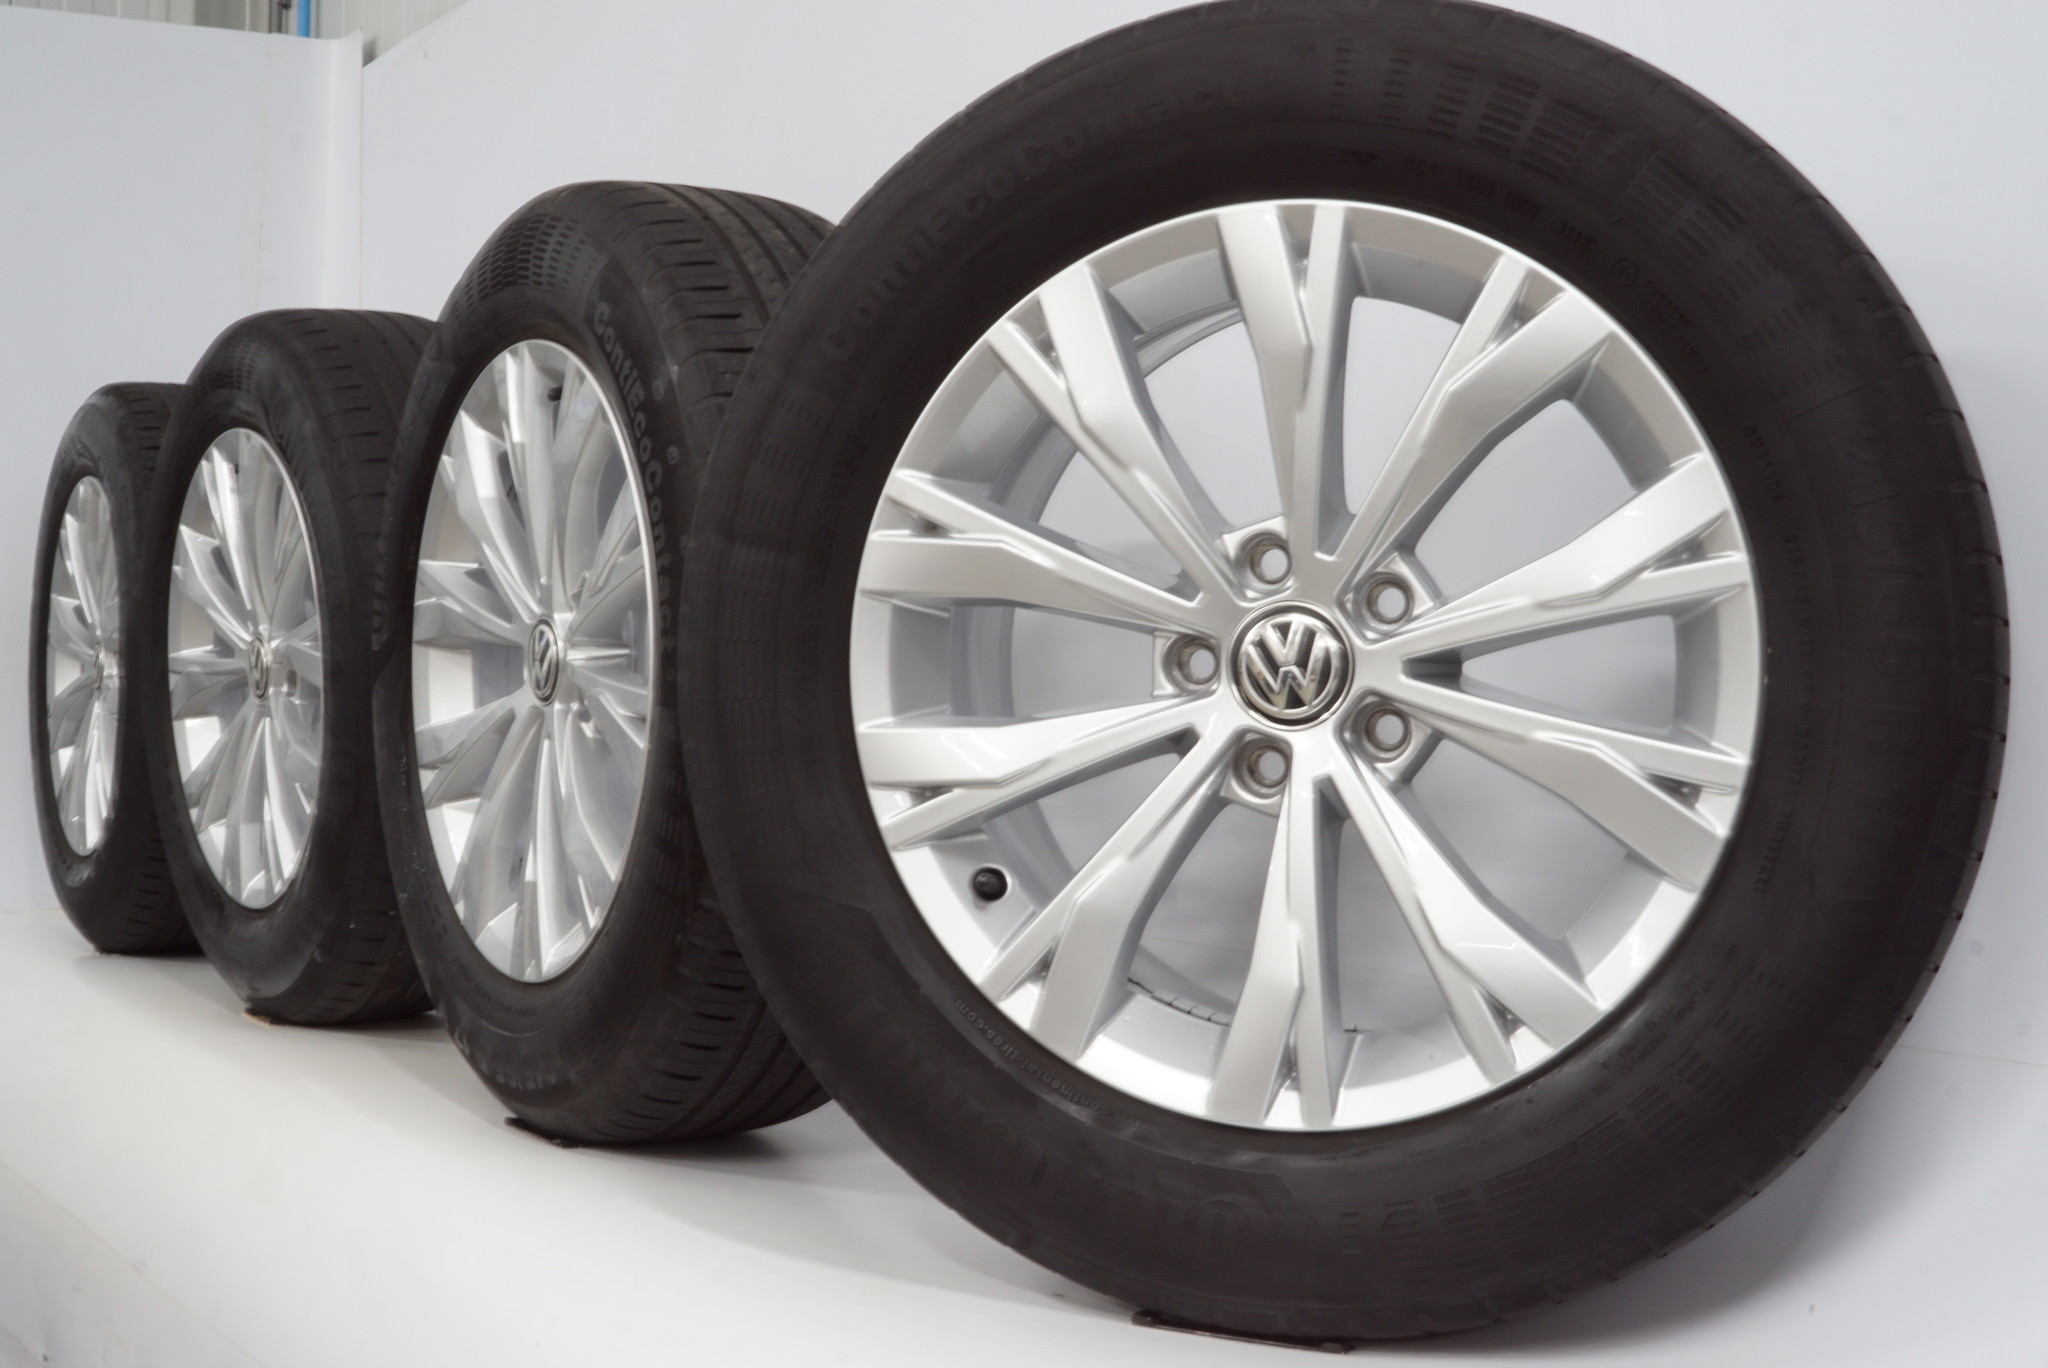 VW Tiguan 5N 17 inch Montana rims + Summer Tires Continental